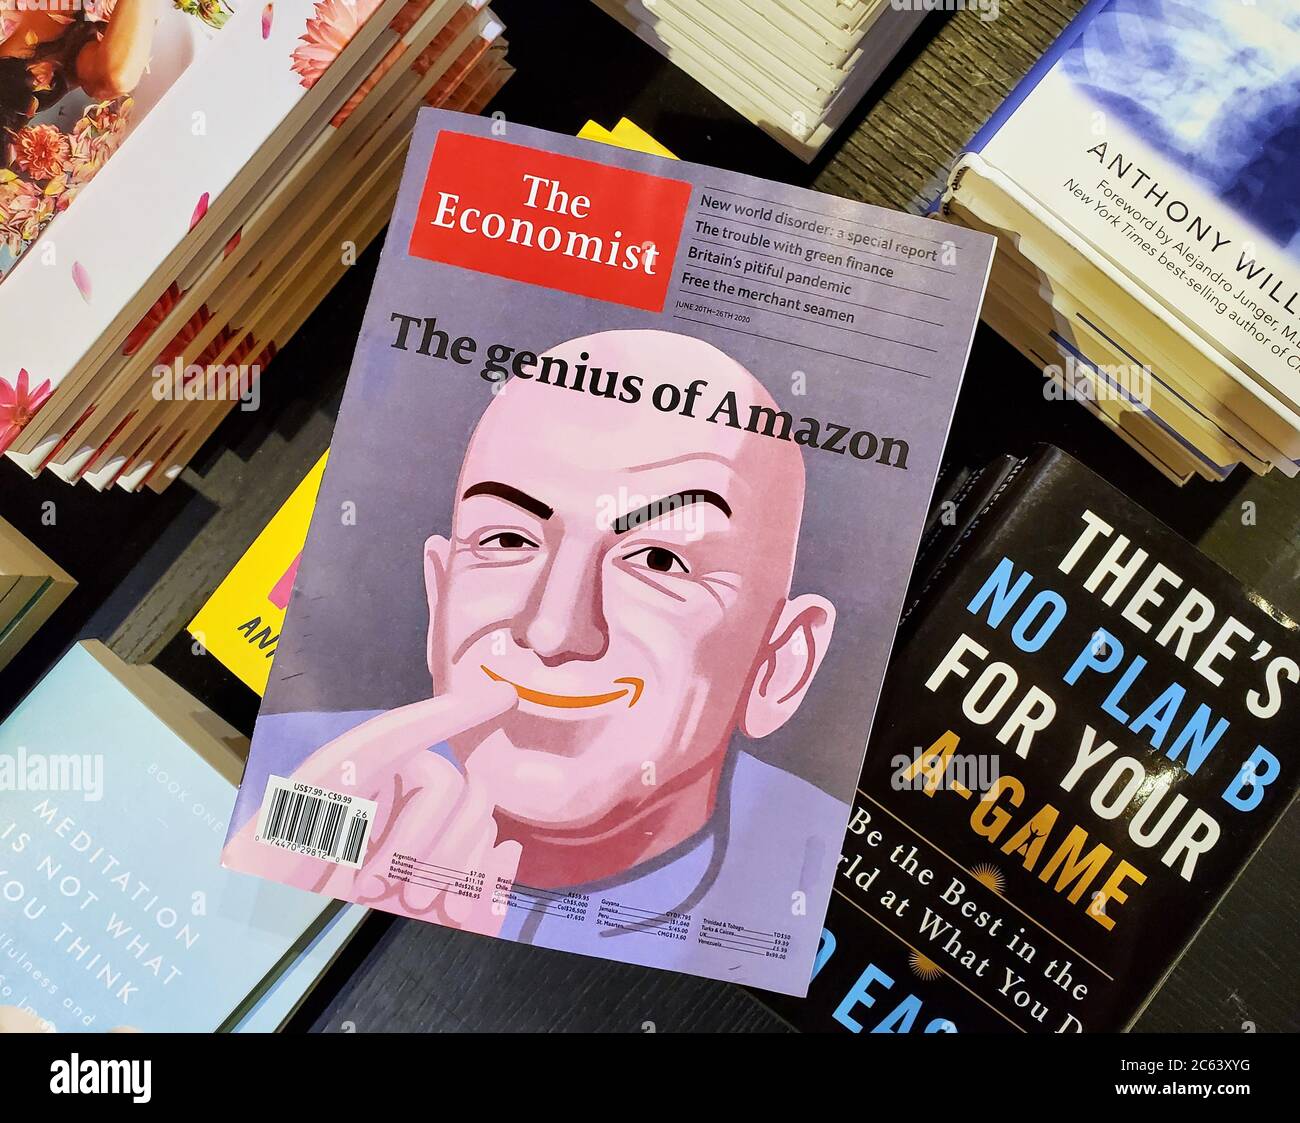 Montreal, Canadá - 30 de junio de 2020: El título de genio de Amazon y una imagen de Jeff Bezos como el periódico Dr. Evil on the Economist sobre una pila de tabú Foto de stock